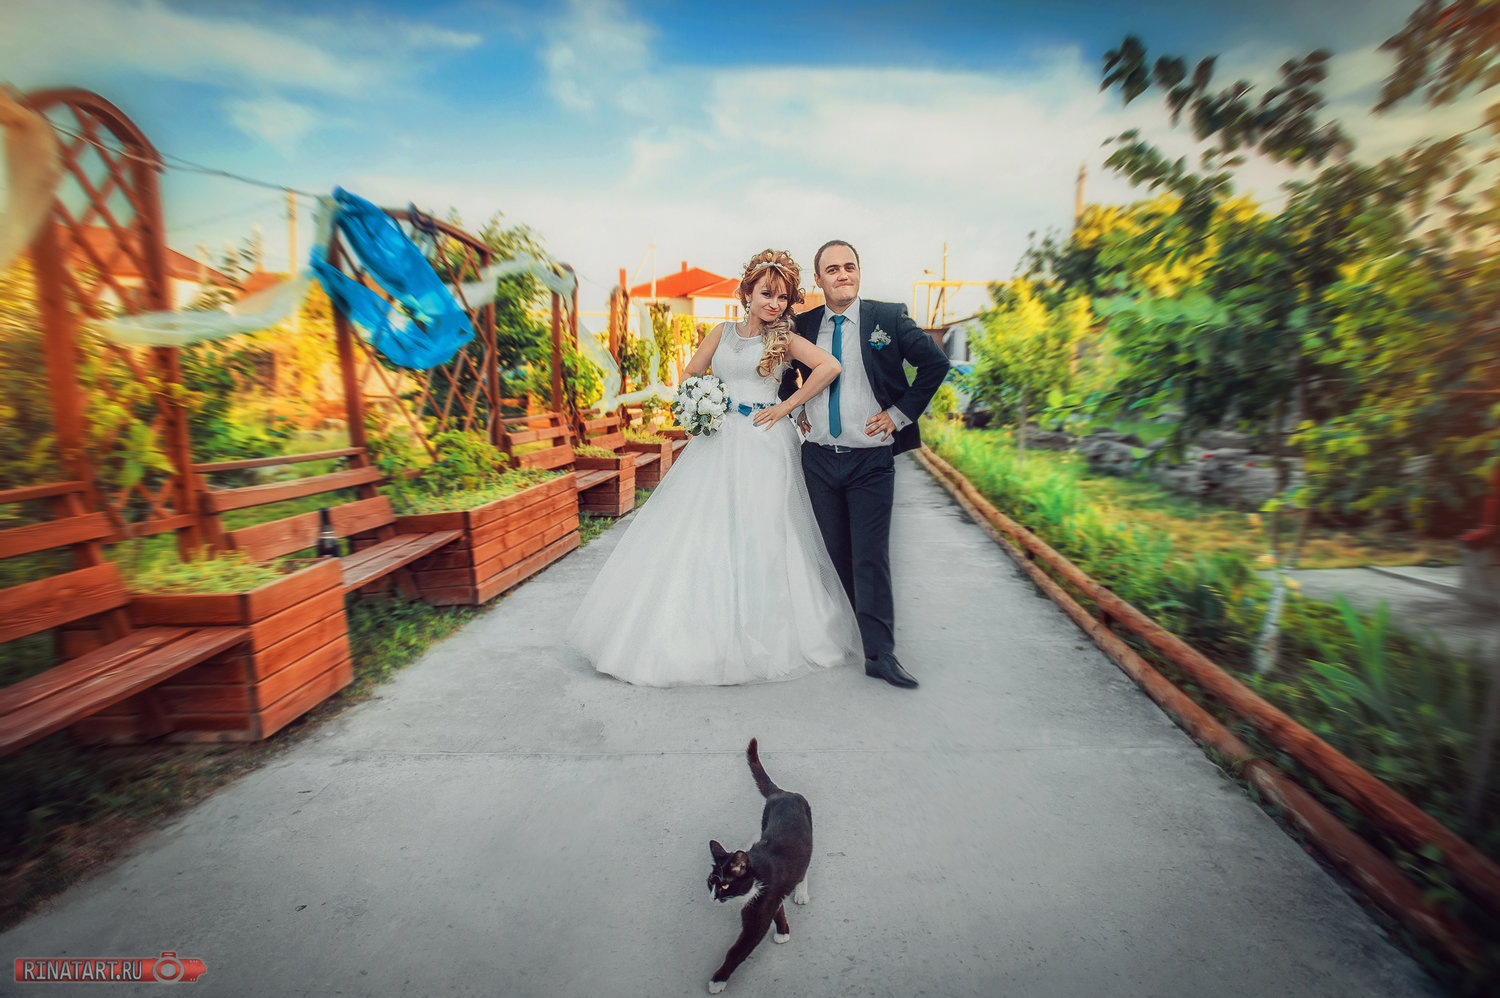 Съемка свадьбы у профессионального фотографа